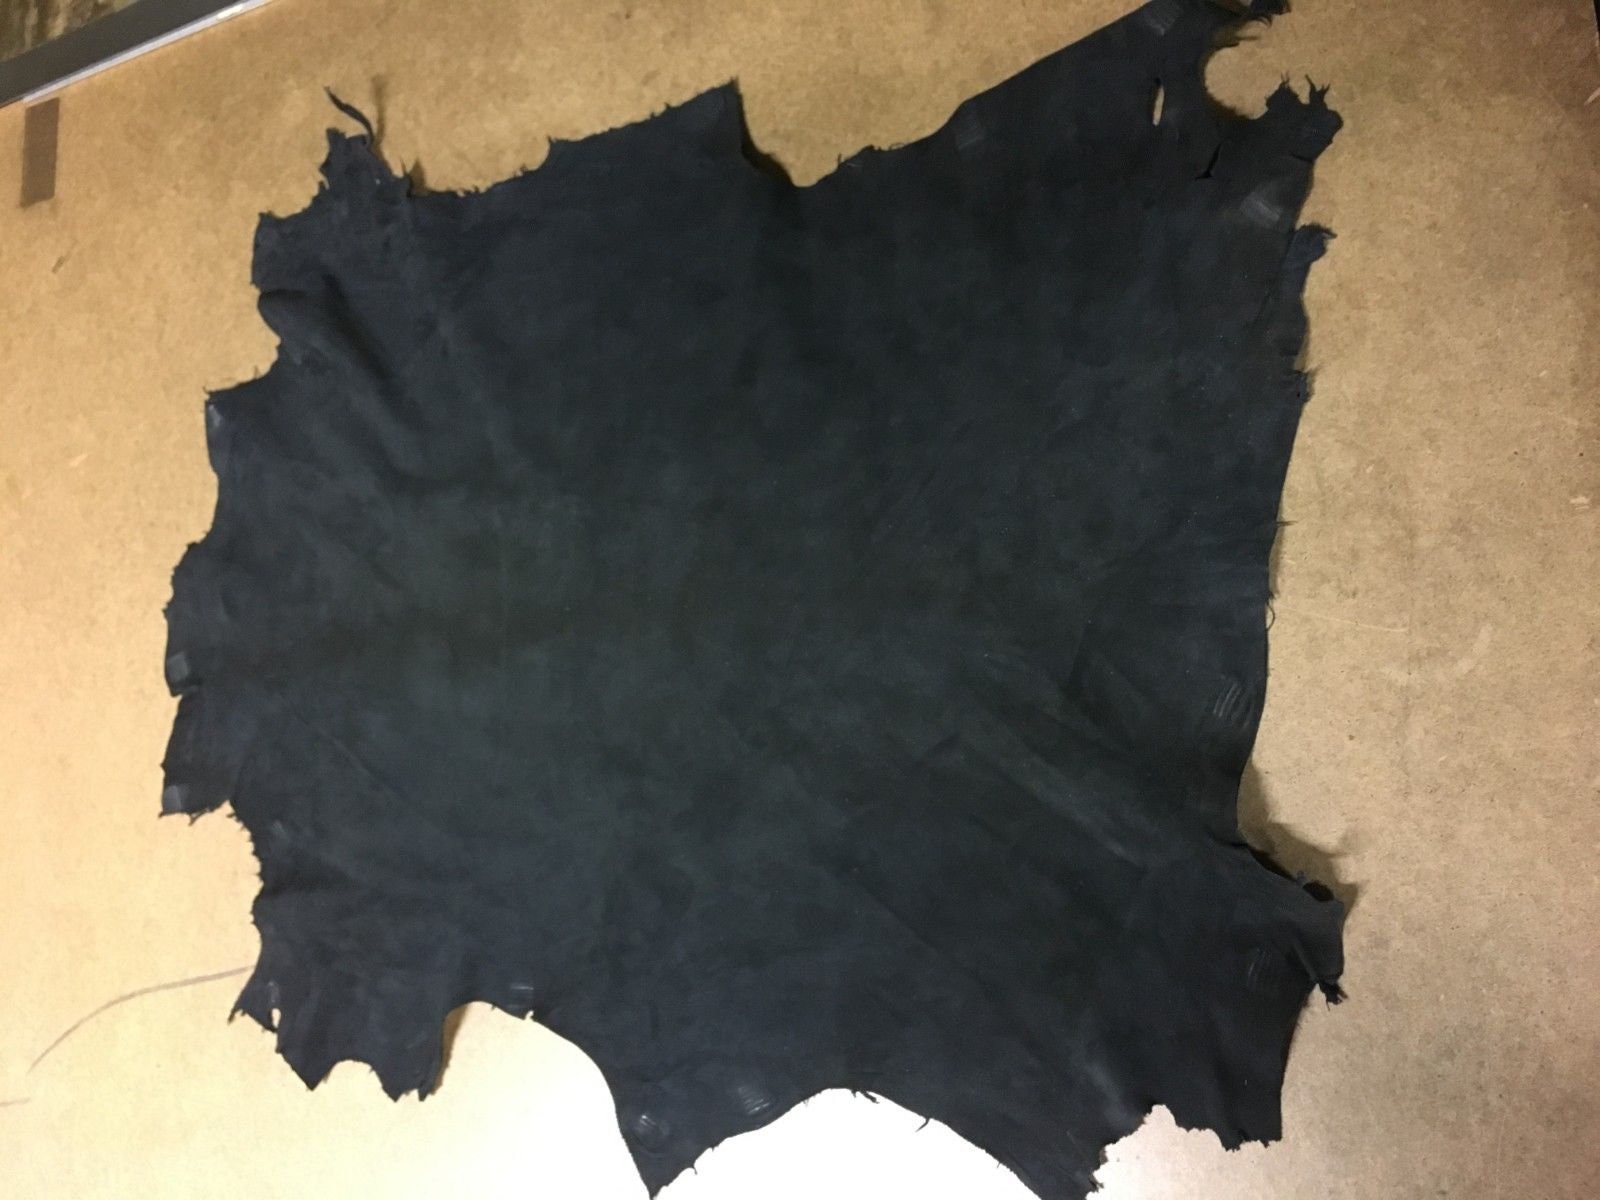 Italian Lambskin Leather Skin Hide "Razor Paper Thin" Dark Brown 6 Sq.F 0.5 oz 